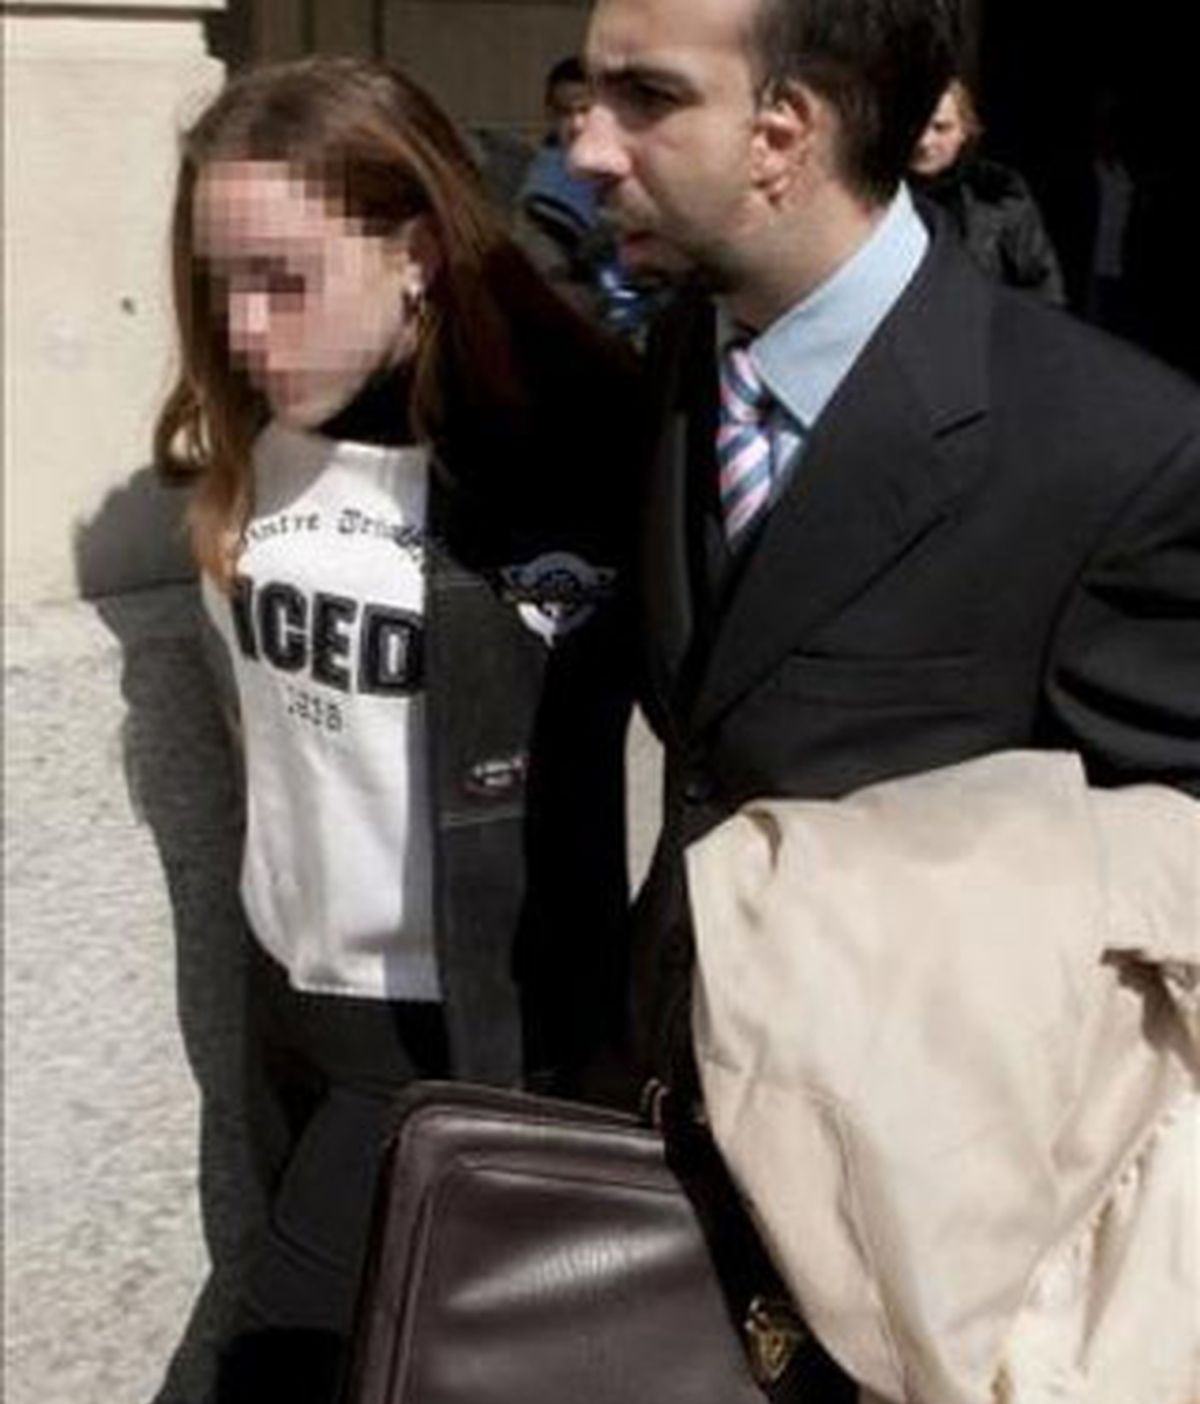 La menor Rocío Perez Gómez, ex novia de Carcaño, acompañada por su abogado tras testificar el pasado mes de marzo en los juzgados de Sevilla. EFE/Archivo